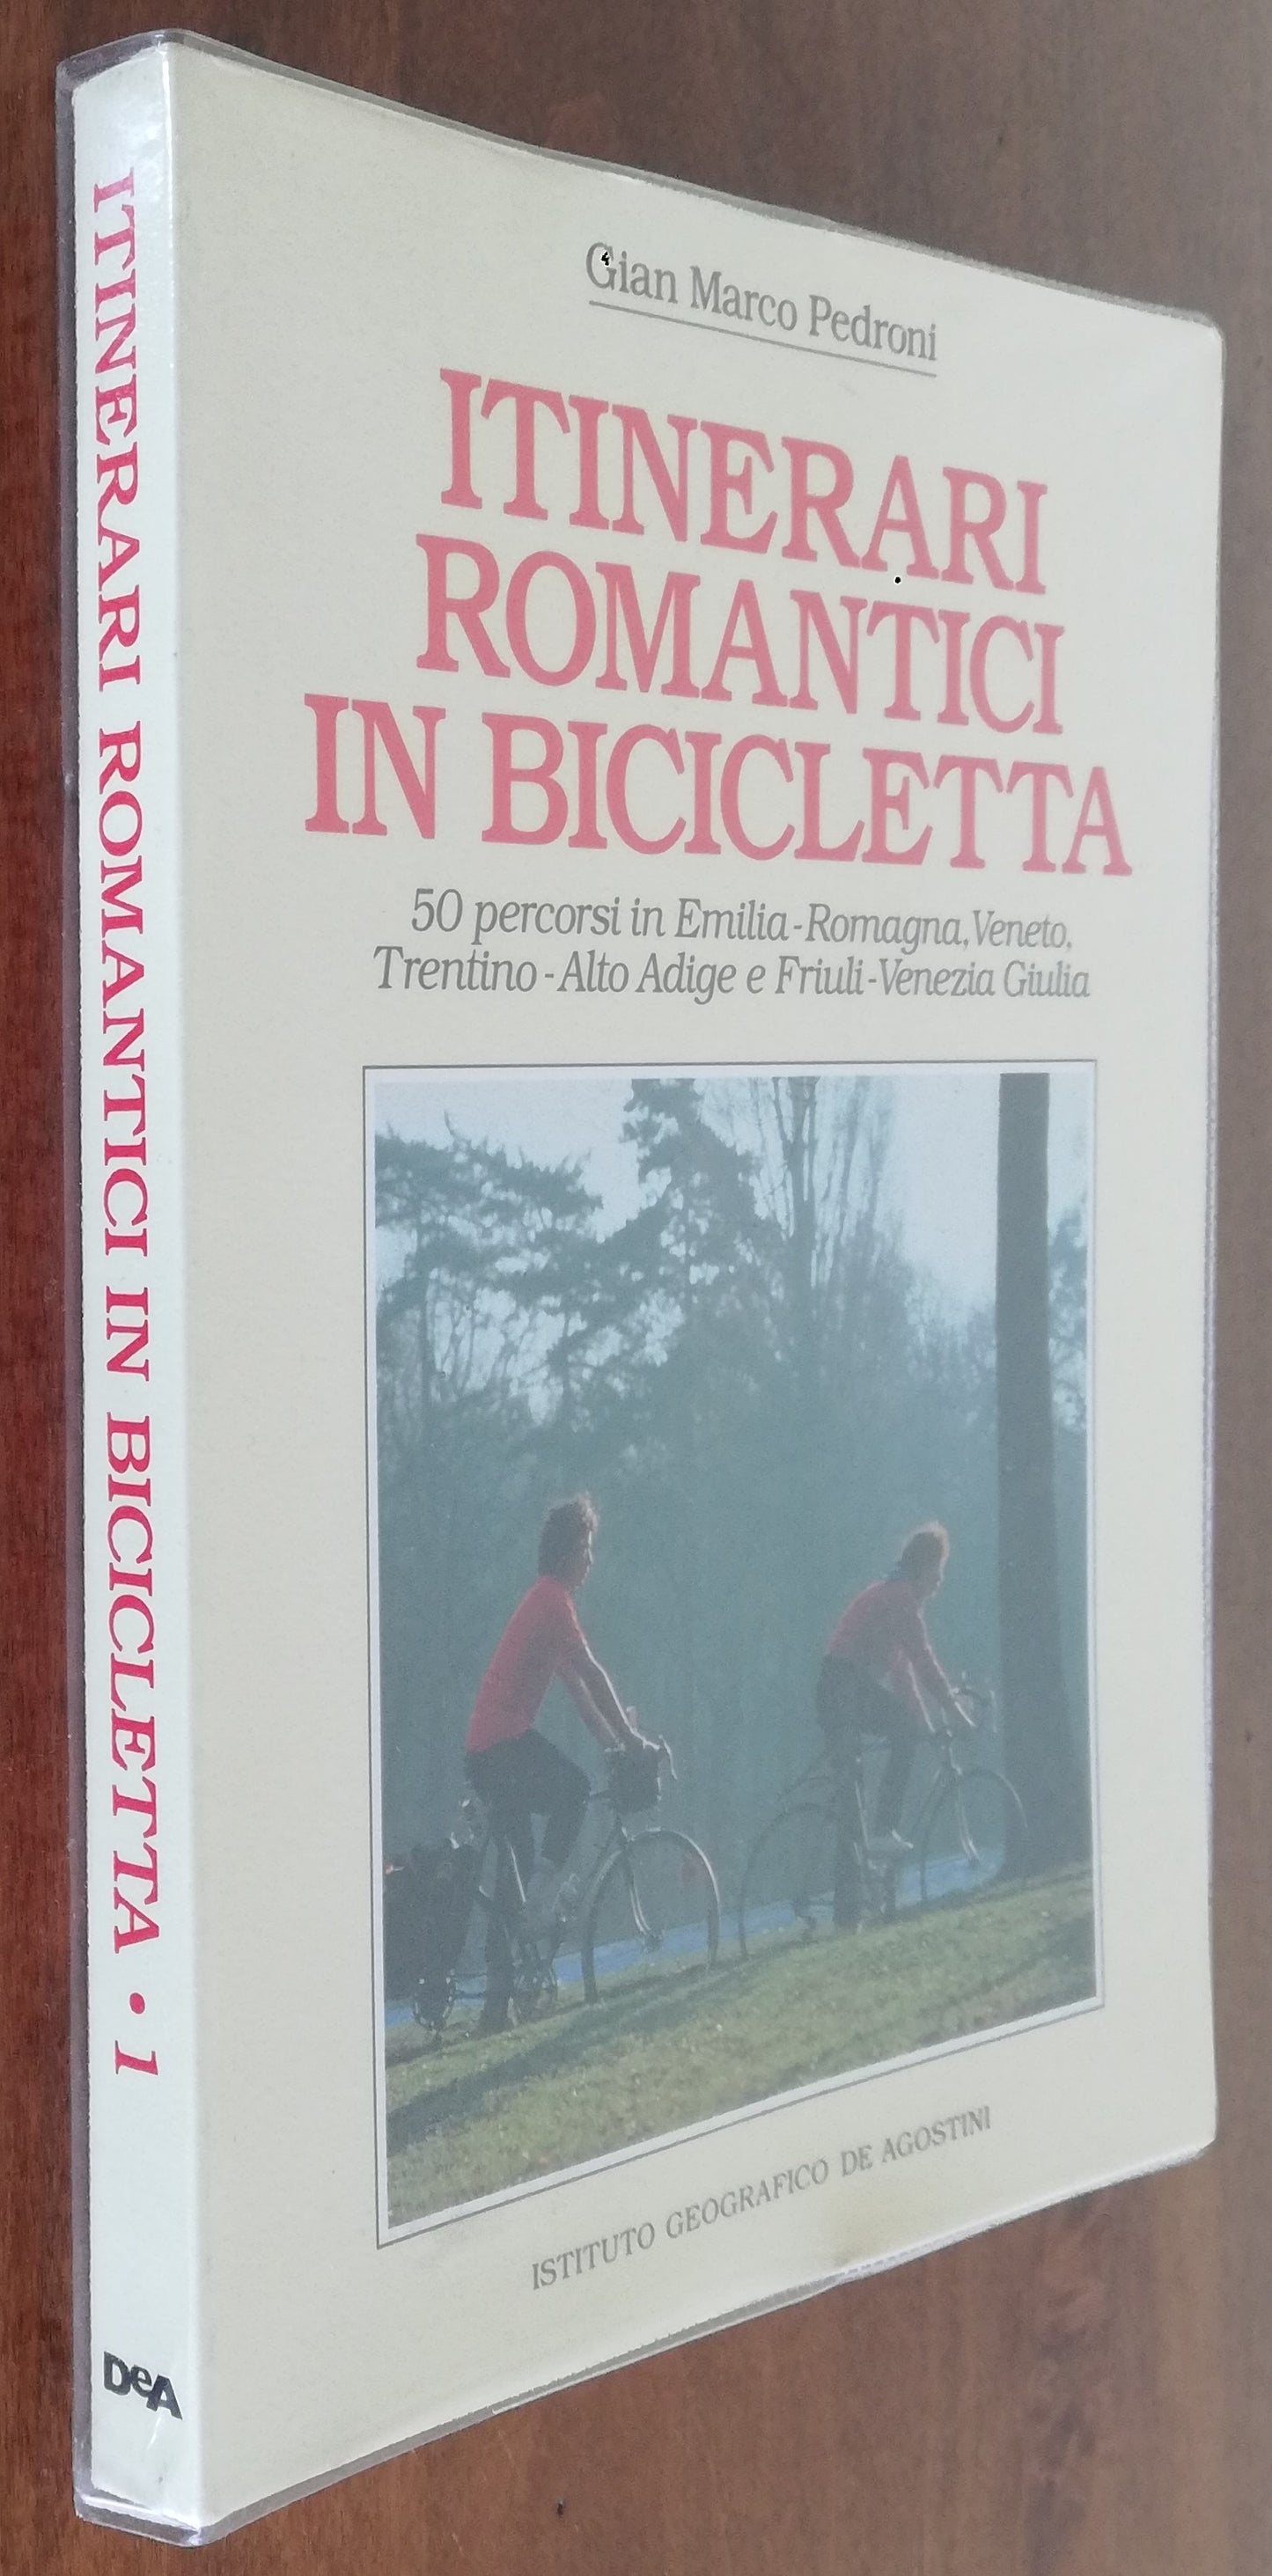 Itinerari romantici in bicicletta. 50 percorsi in Emilia-Romagna, Veneto, Trentino-Alto Adige e Friuli-Venezia Giulia